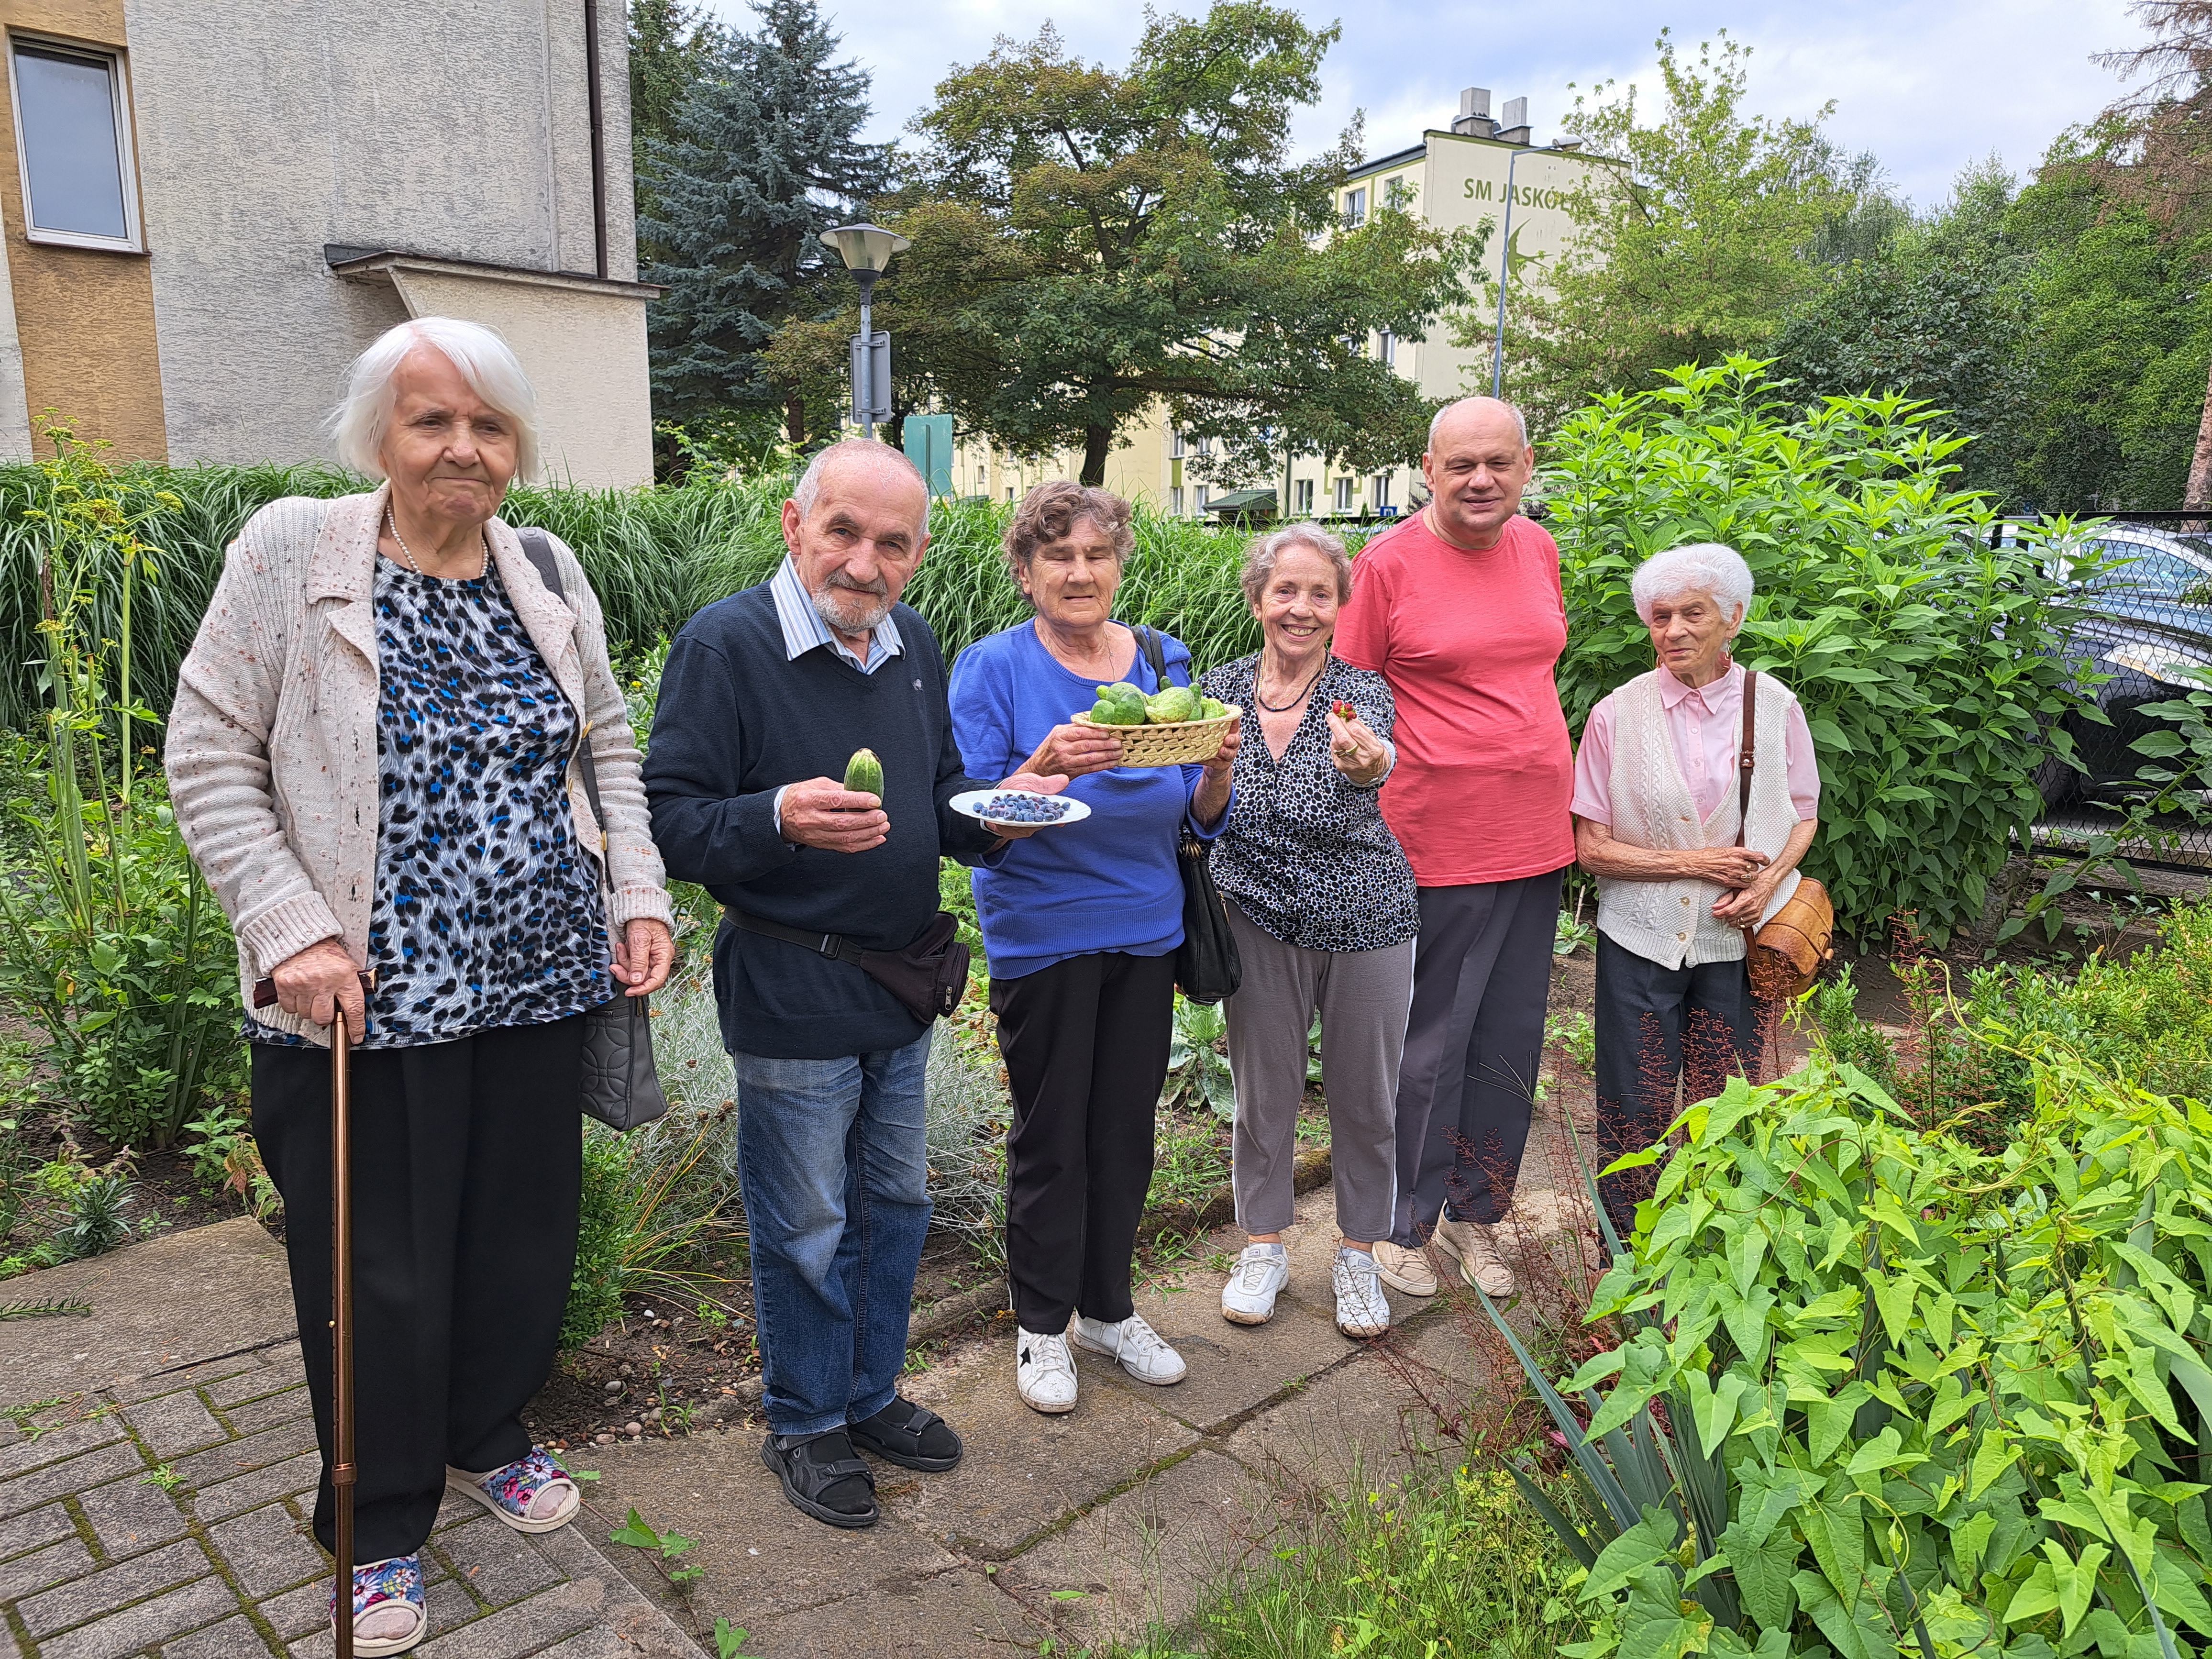 Seniorzy pozują na tle Dziennego Domu z zebranymi owocami i warzywami